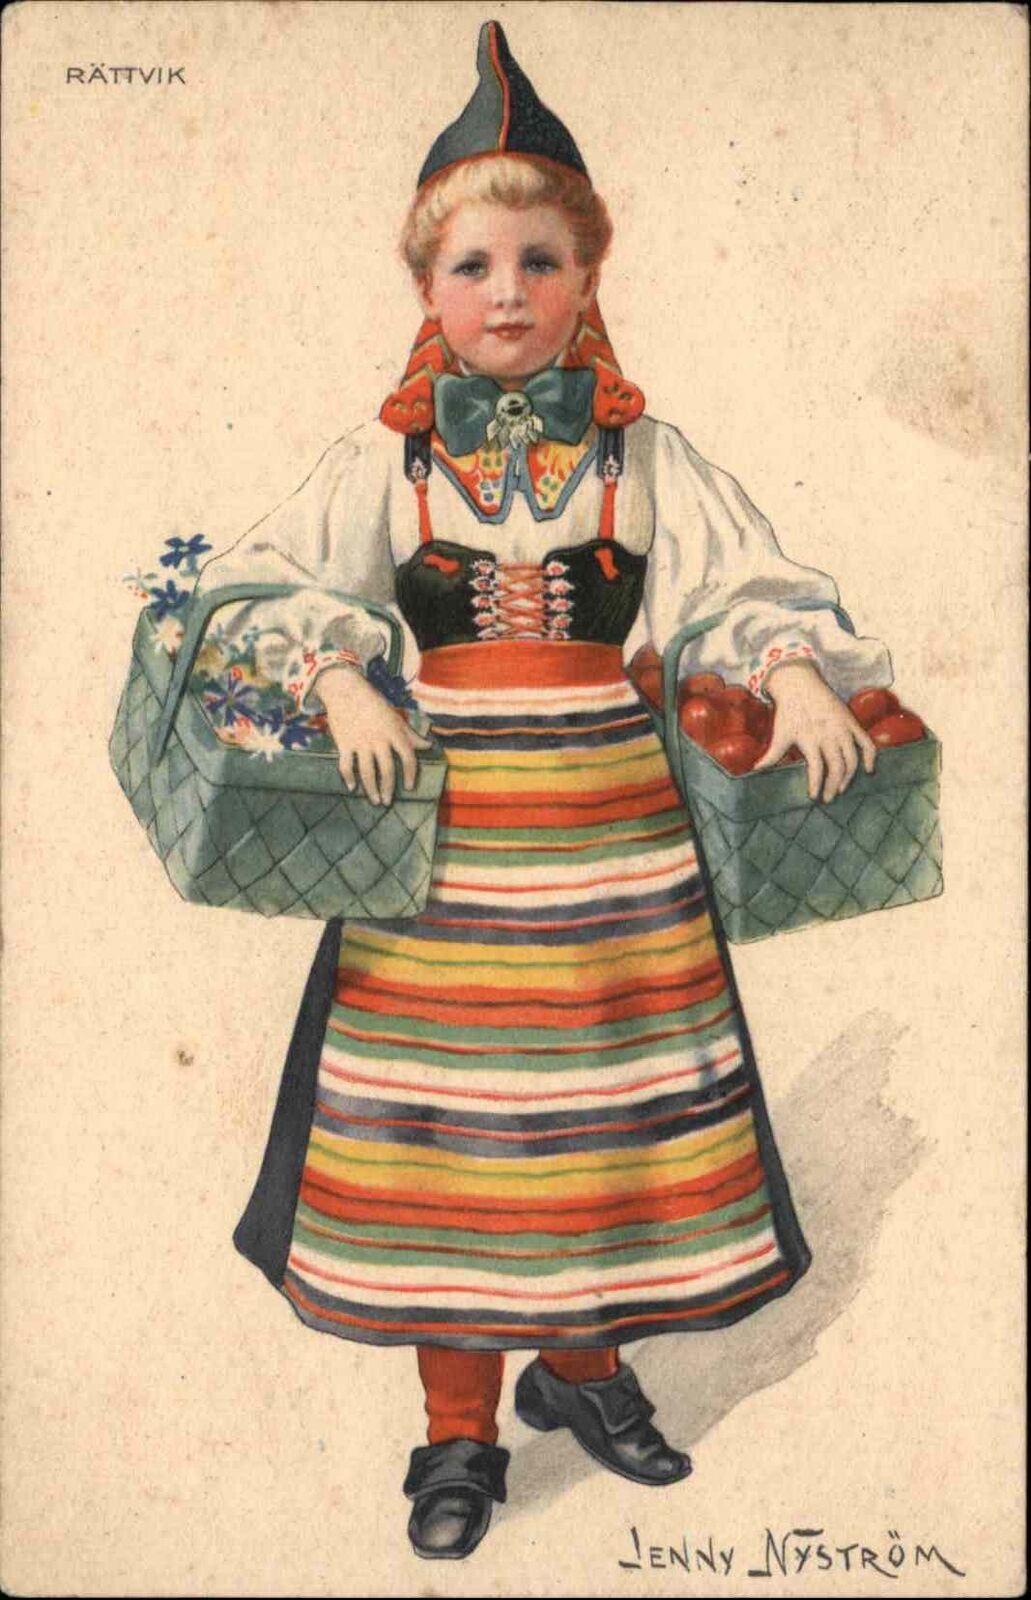 Jenny Nystrom Rattvik Sweden Little Girl Ethnic Costume Vintage Postcard